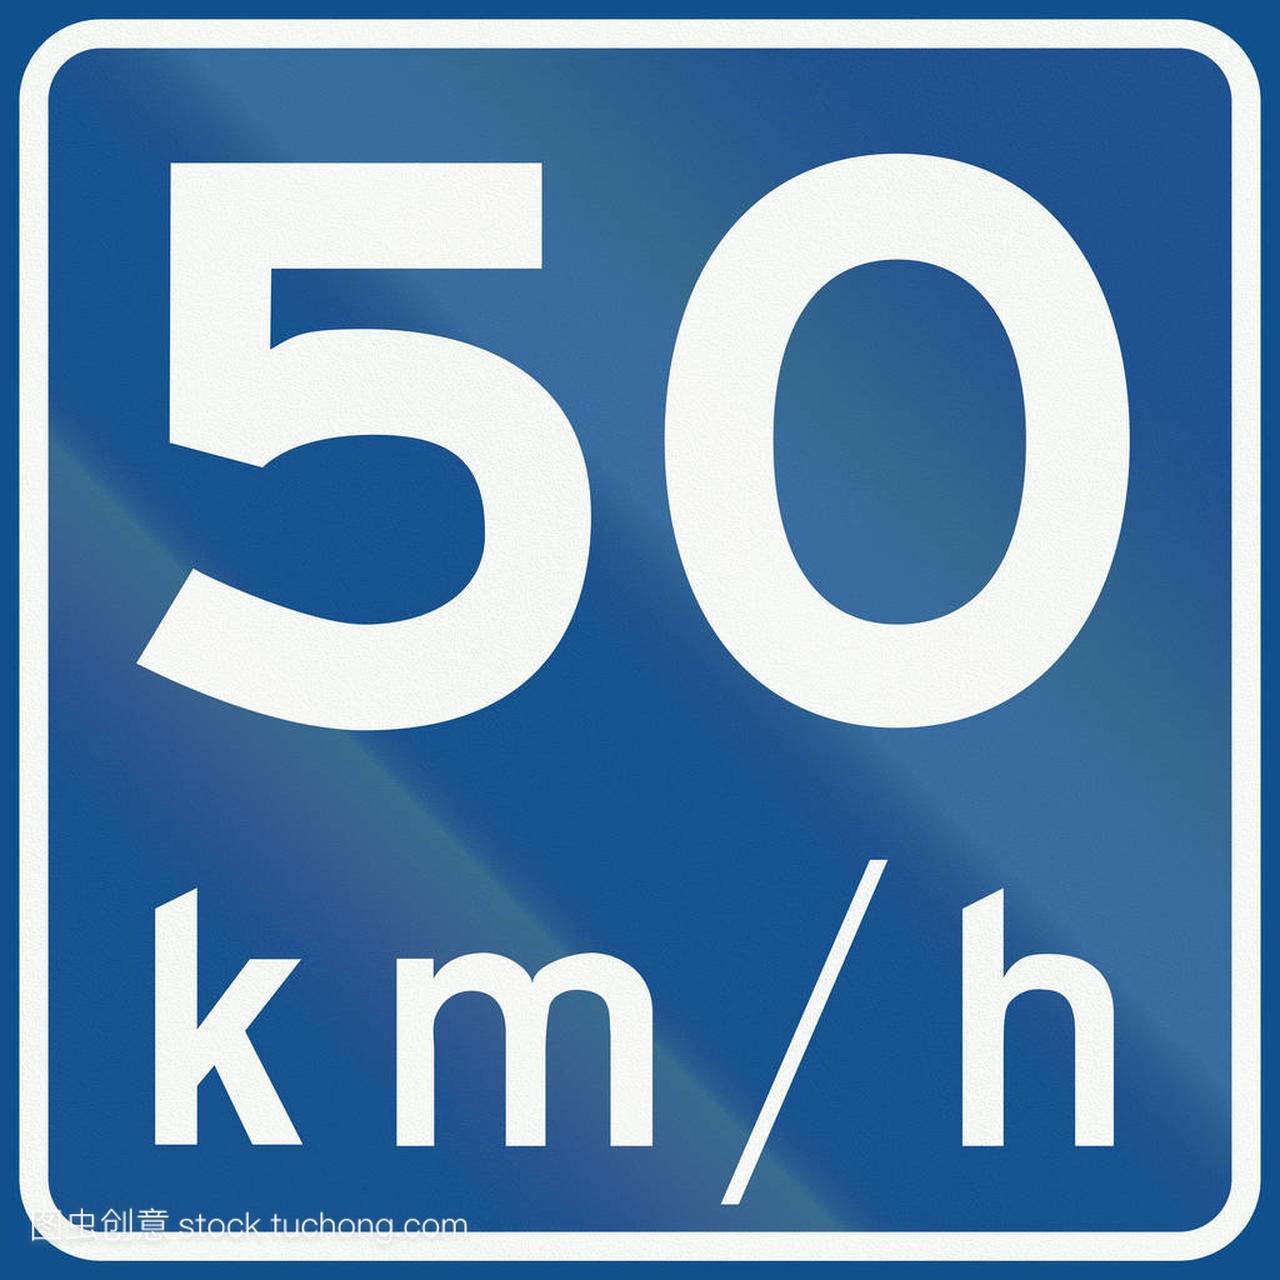 荷兰路标 A4-建议速度 50 公里\/每小时